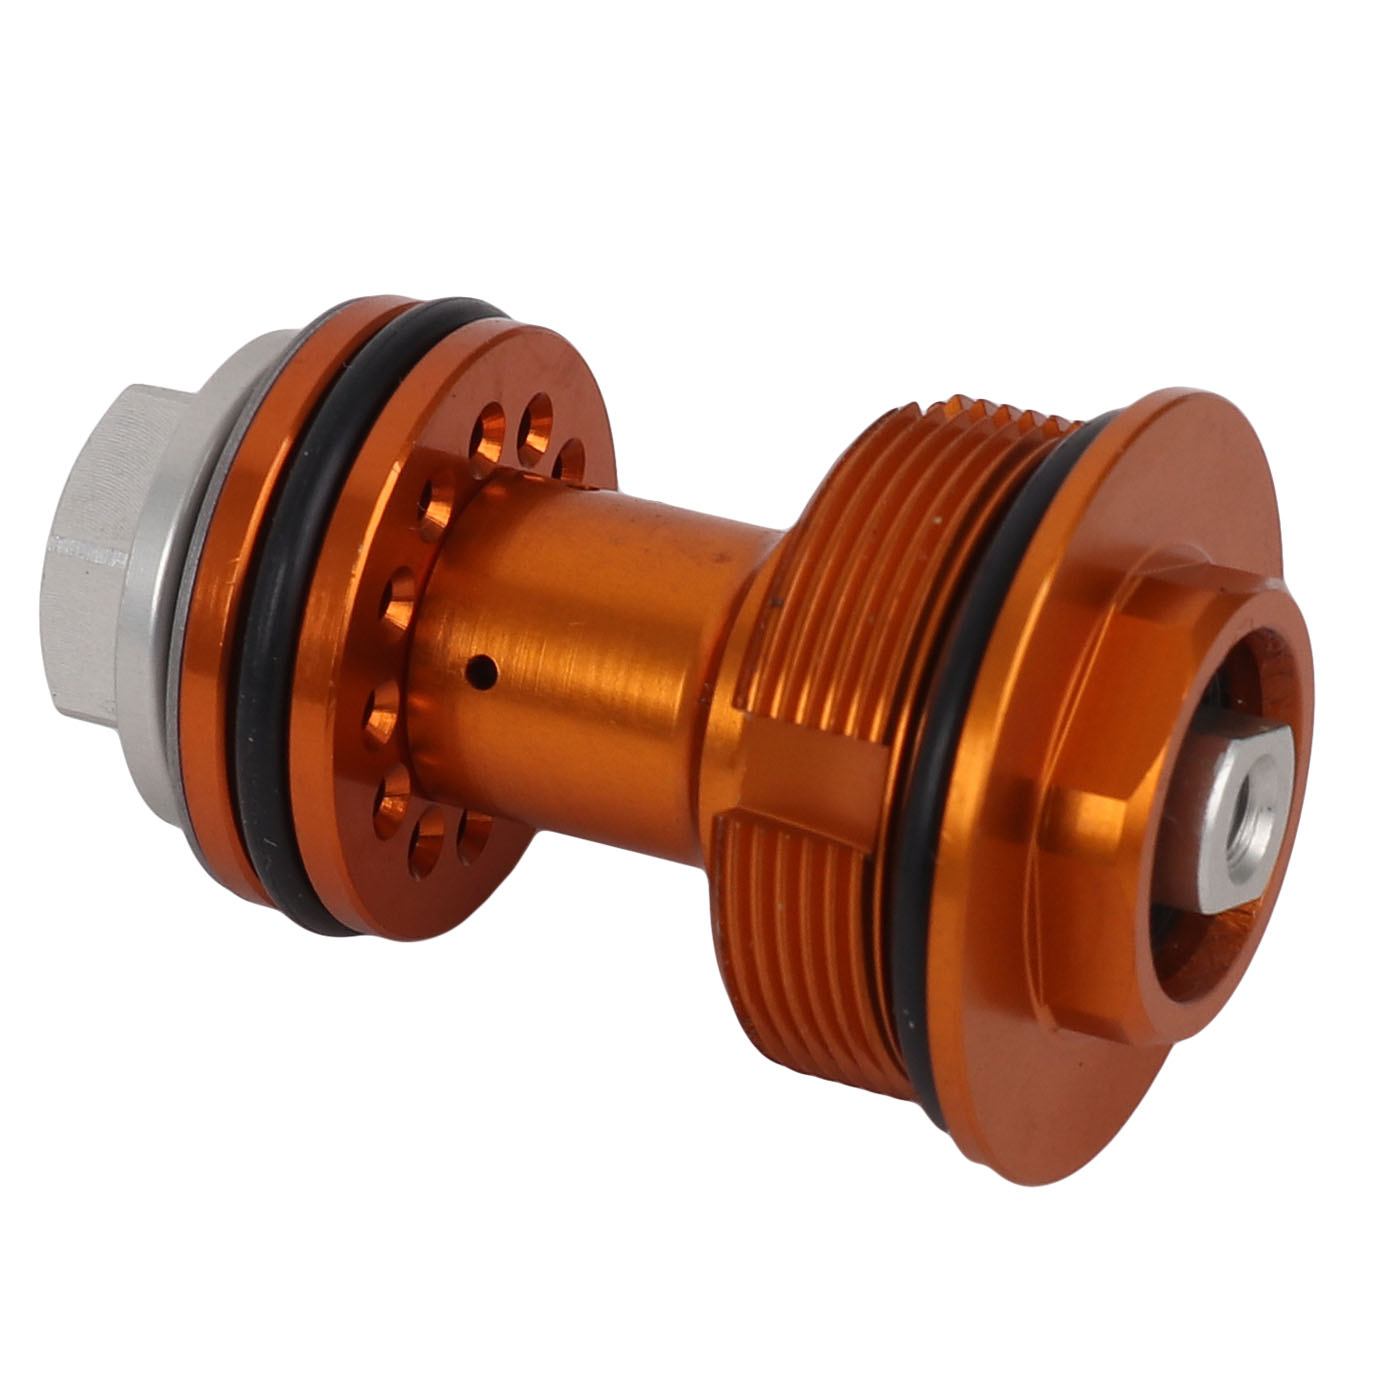 https://images.bike24.com/i/mb/7c/20/24/formula-cts-compression-valve-kit-for-mod-rear-shock-orange-medium-1014423.jpg